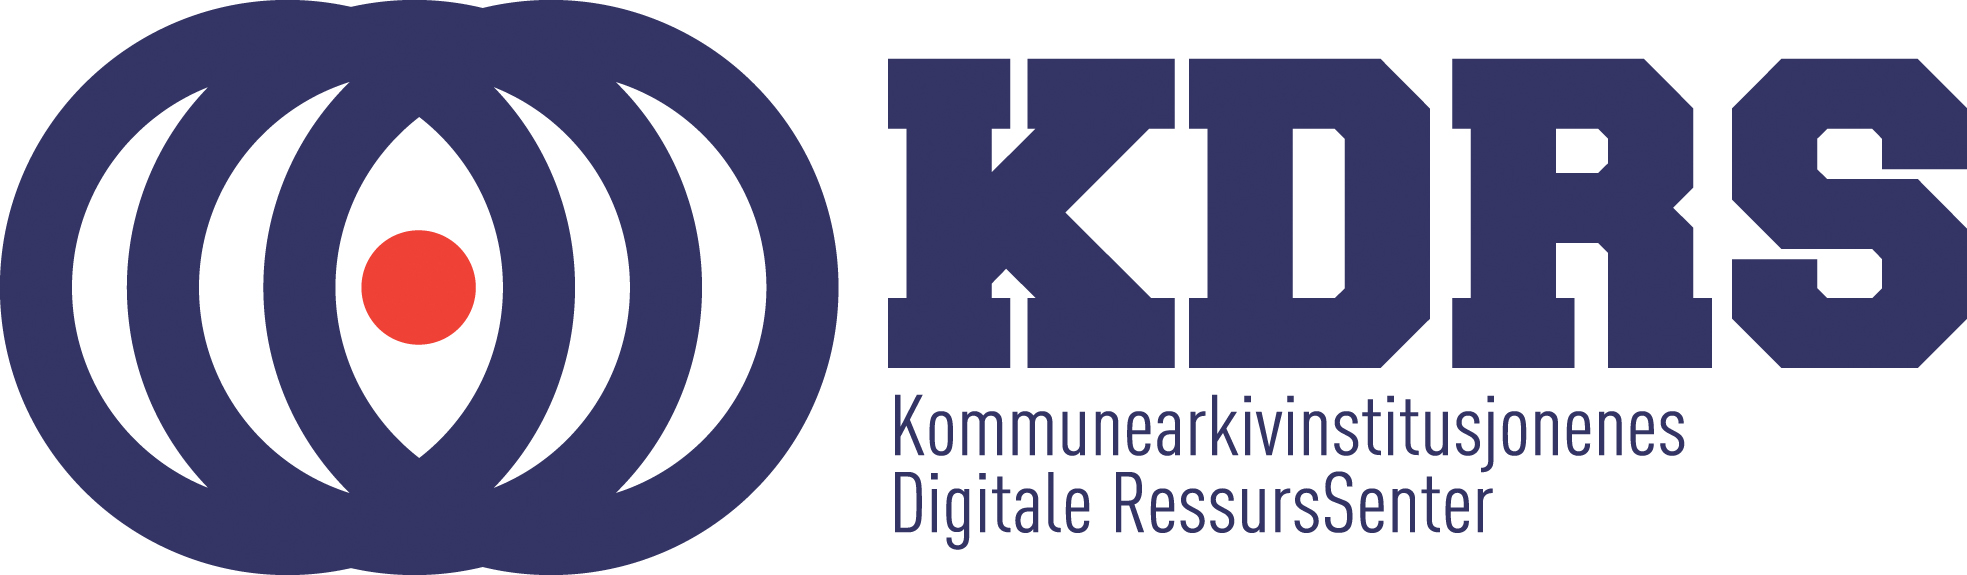 Kommunearkivinstitusjonenes Digitale Ressurs Senter SA (KDRS)